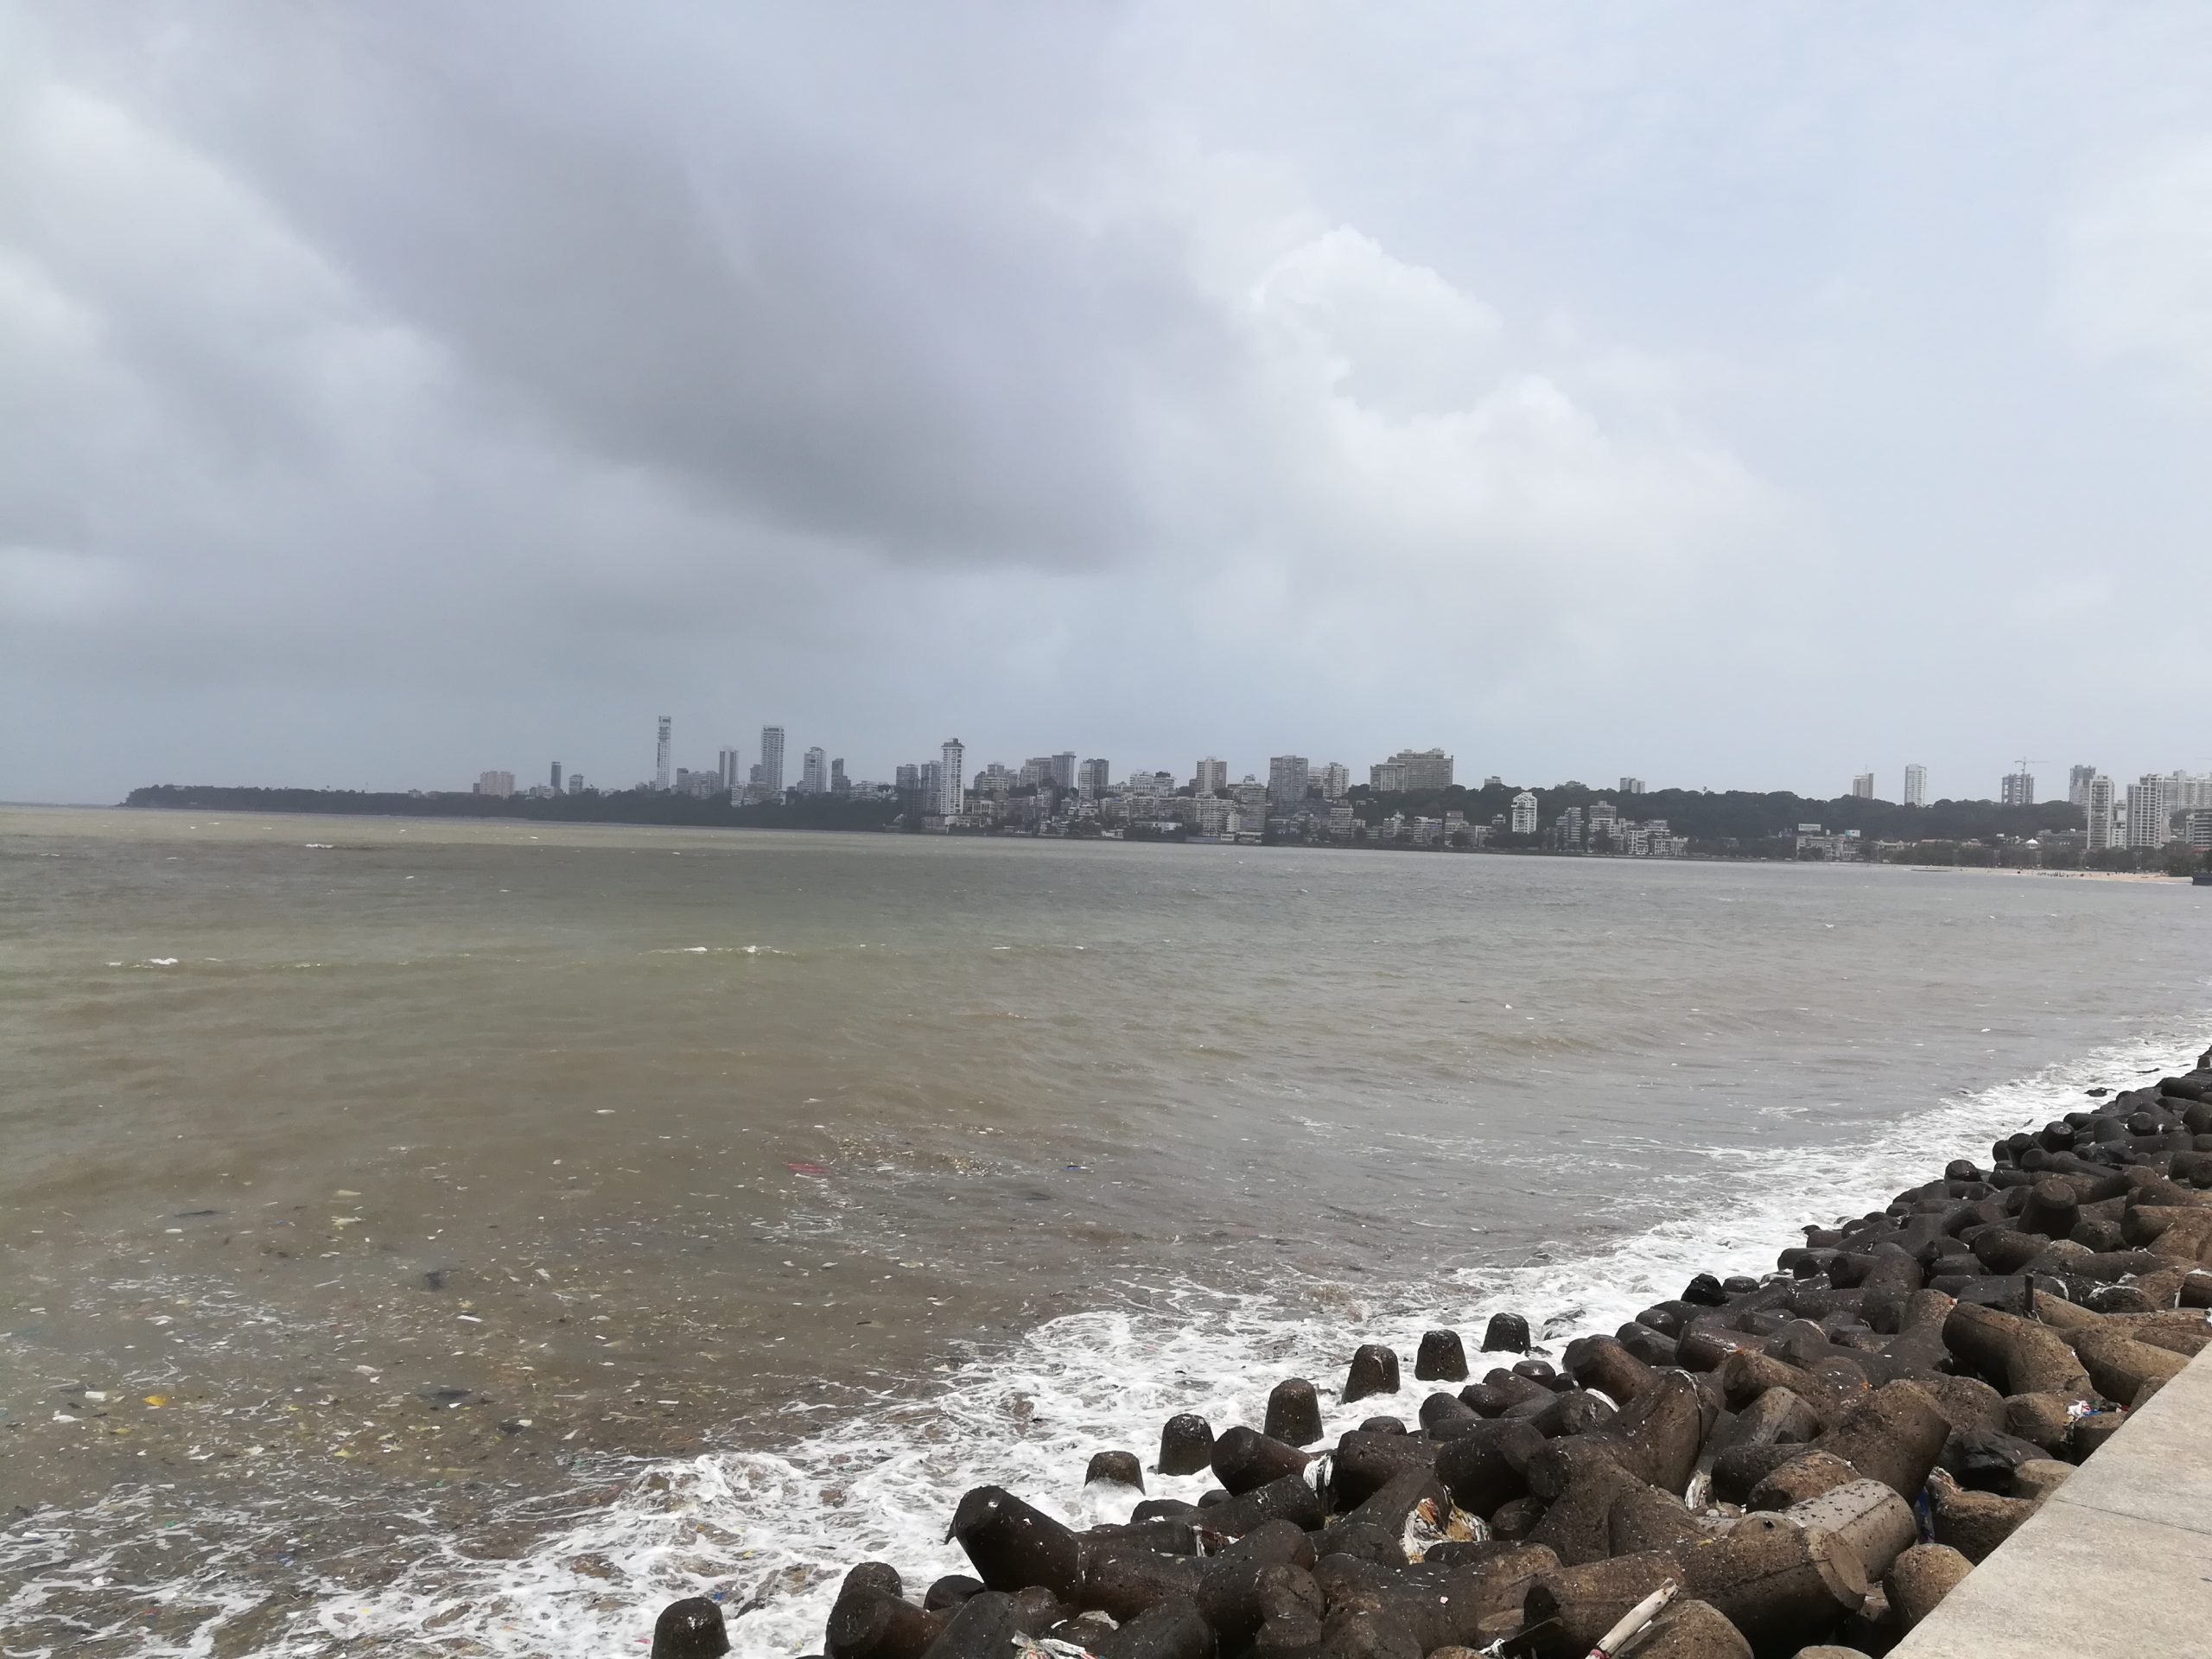 Marine Drive in Mumbai